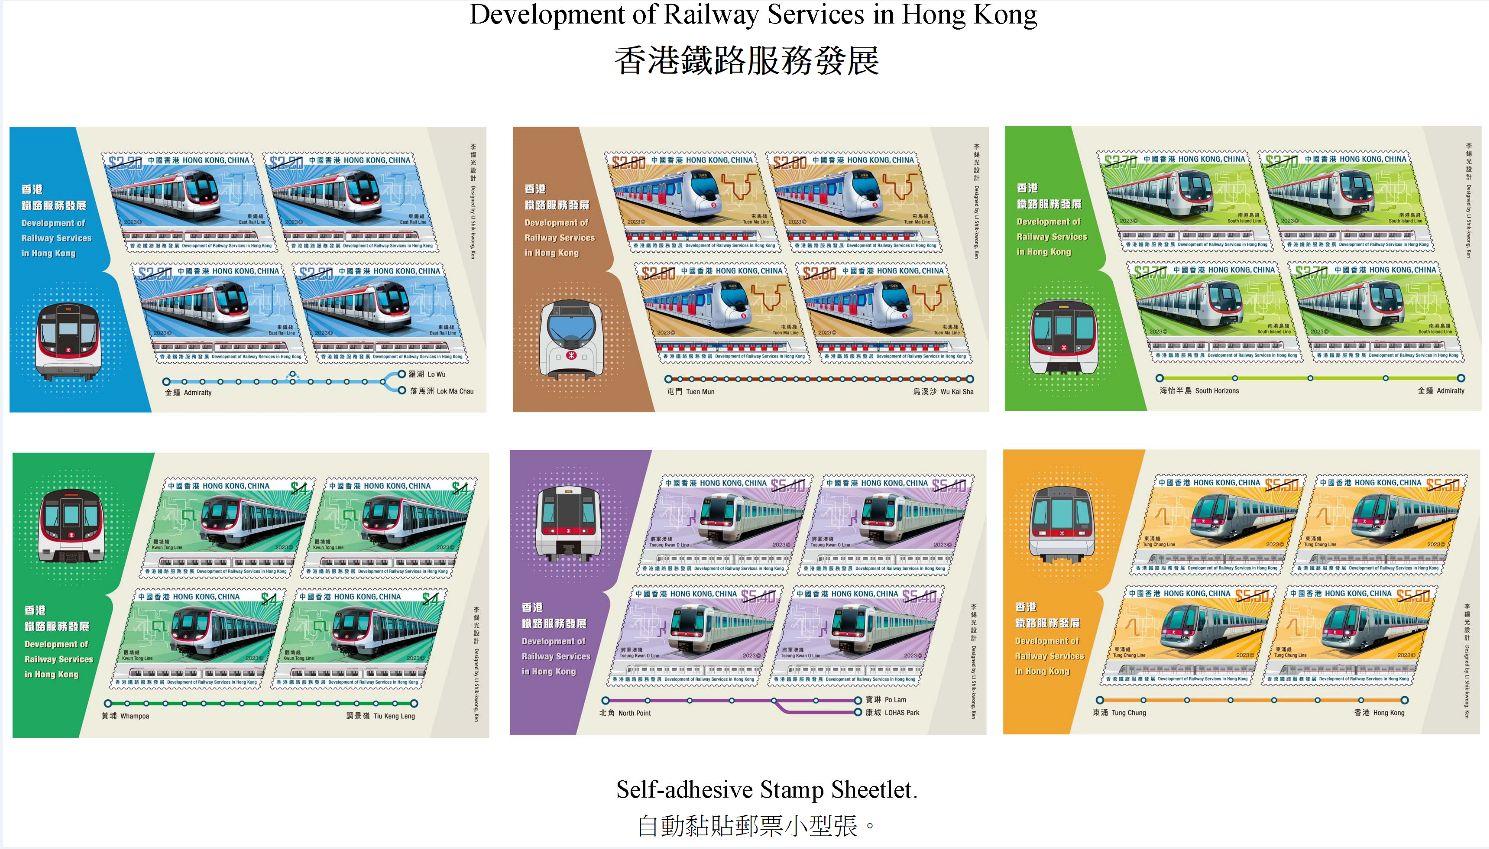 香港邮政十一月二十三日（星期四）发行以「香港铁路服务发展」为题的特别邮票及相关集邮品。图示自动黏贴邮票小型张。